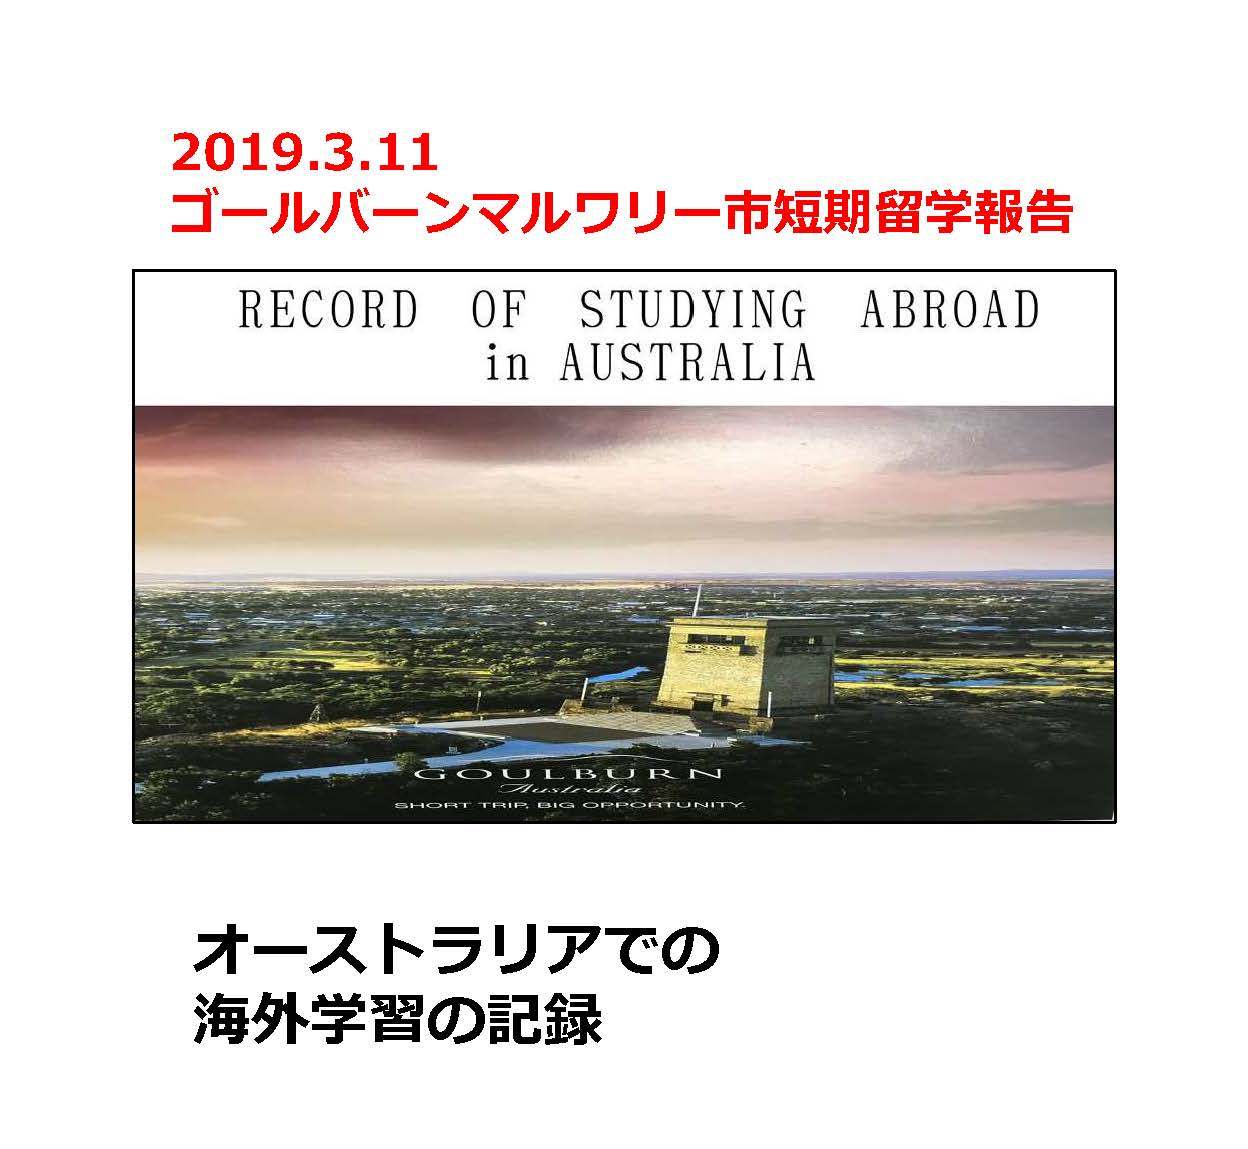 2019年3月11日 ゴールバーンマルワリー市短期留学報告 オーストラリアでの海外学習の記録資料の表紙